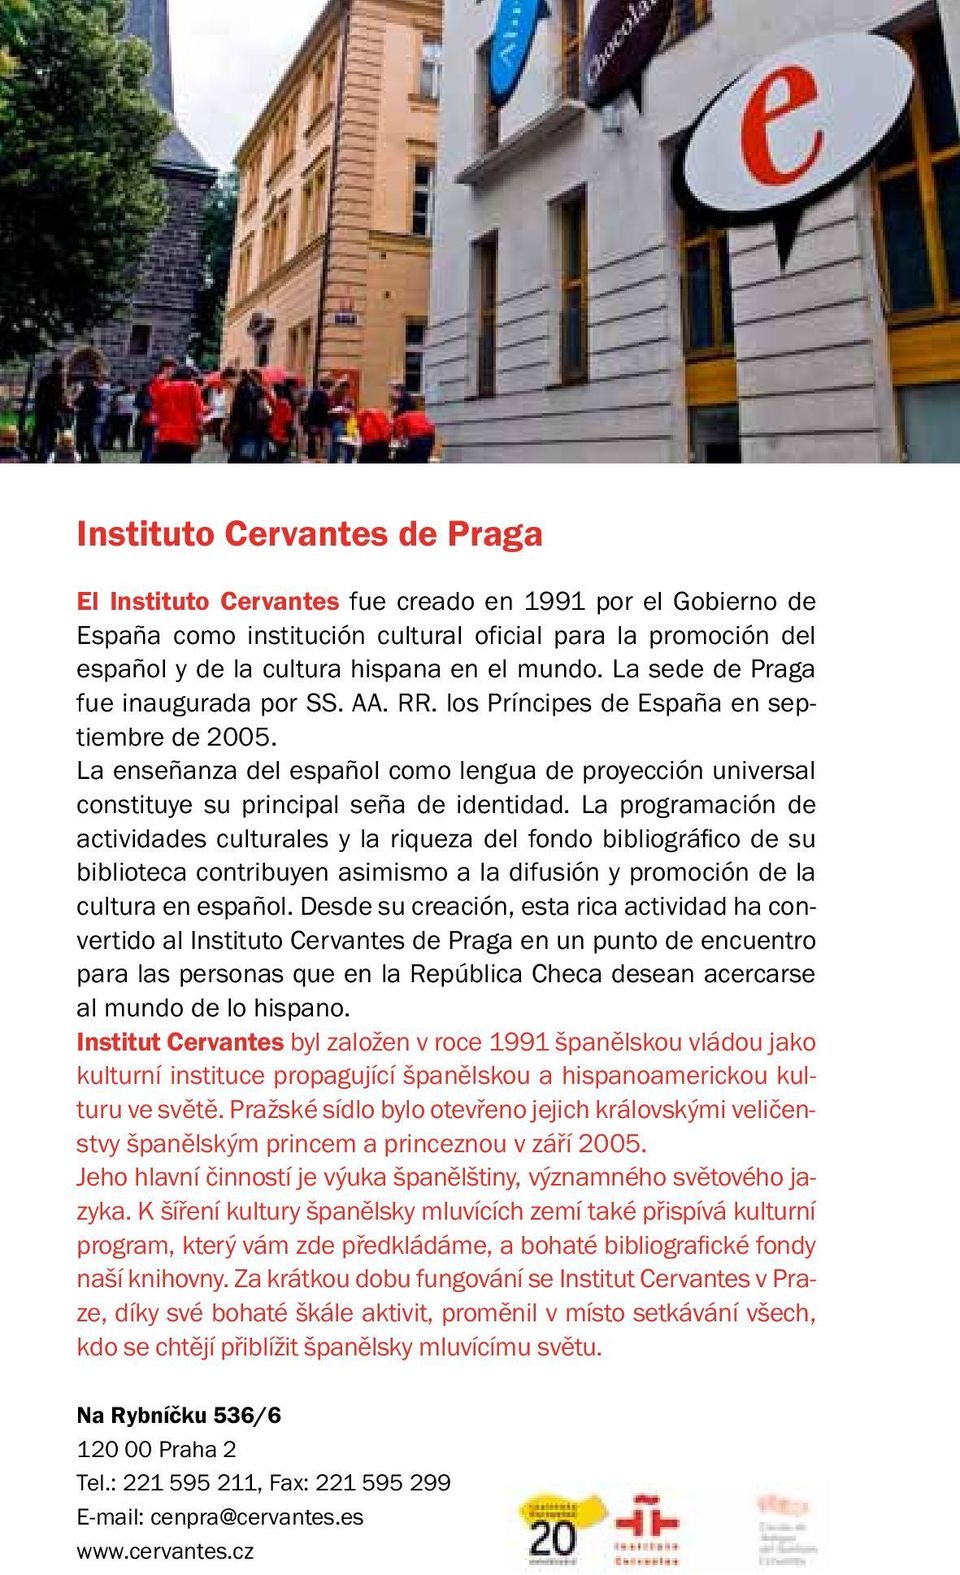 La programación de actividades culturales y la riqueza del fondo bibliográfico de su biblioteca contribuyen asimismo a la difusión y promoción de la cultura en español.